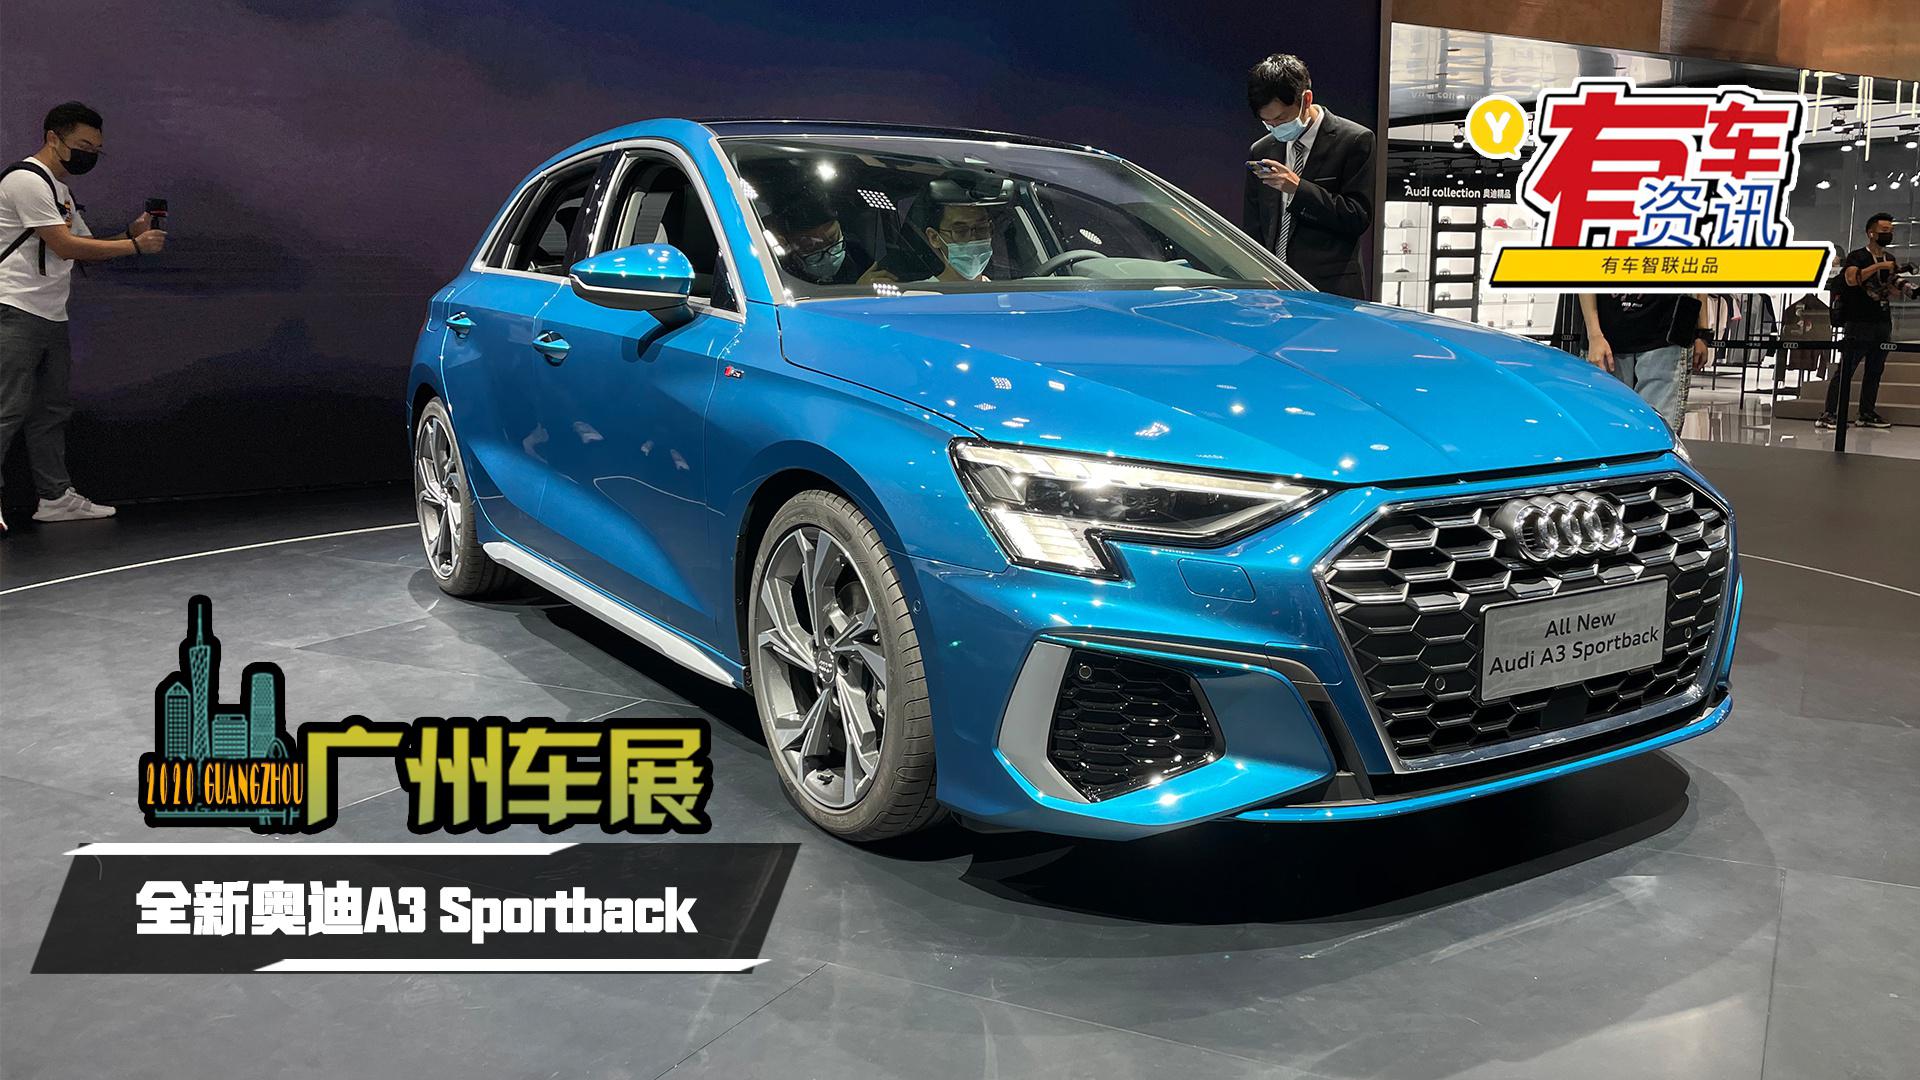 2020广州车展丨搭载1.4T发动机 全新奥迪A3 Sportback首发